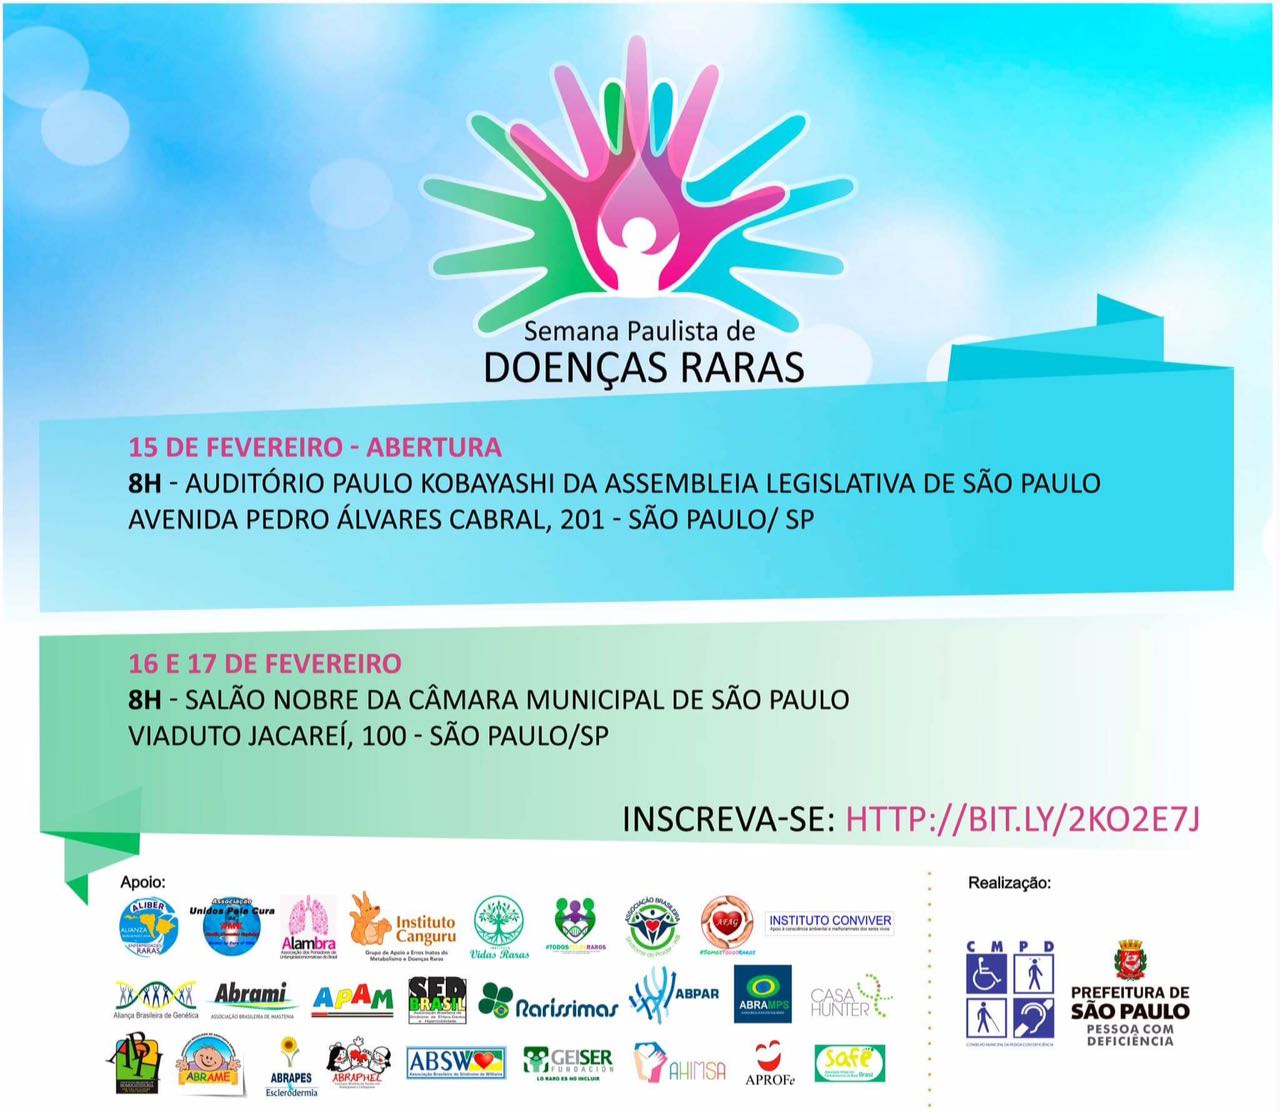 Convite da Semana Paulista de Doenças Raras, abertura 15 de fevereiro, na Assembleia Legislativa de São Paulo e 16 e 17 de fevereiro na Câmara Municipal de São Paulo, ambos a partir das 8 horas.